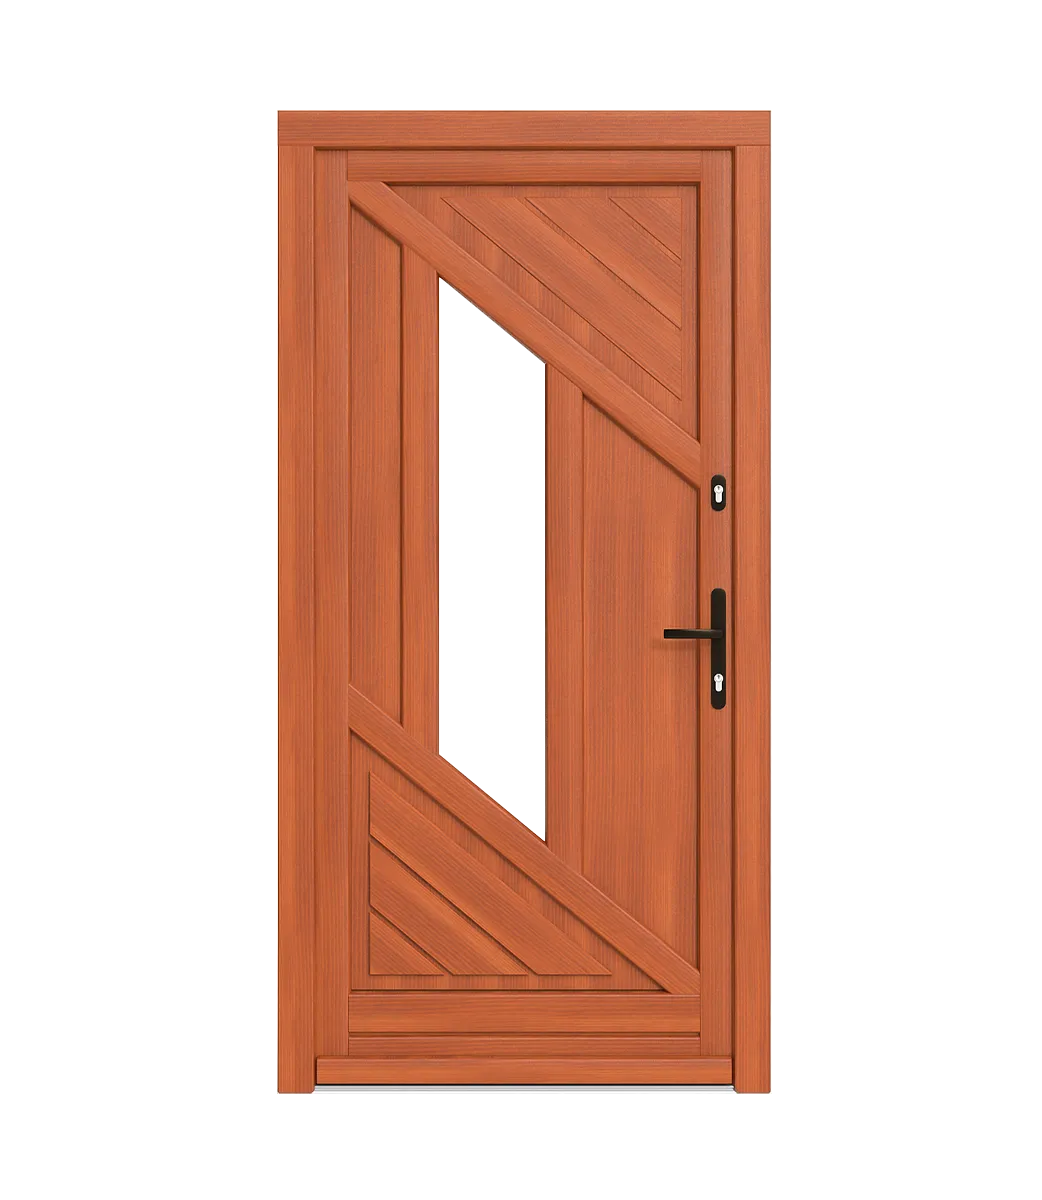 Spacers in wooden doors